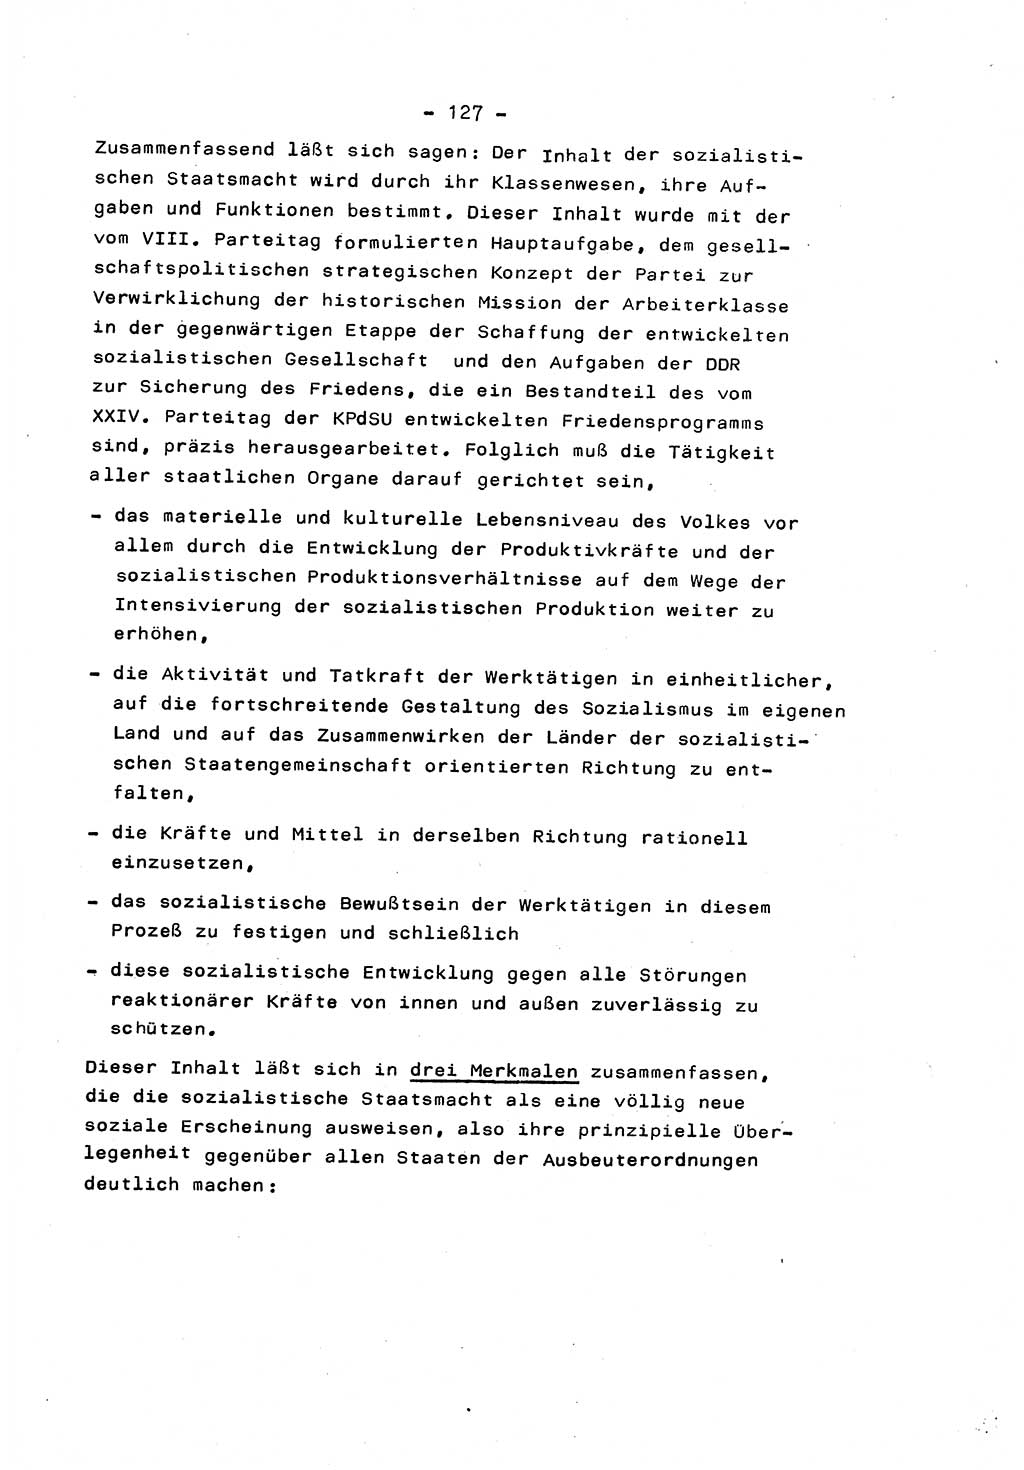 Marxistisch-leninistische Staats- und Rechtstheorie [Deutsche Demokratische Republik (DDR)] 1975, Seite 127 (ML St.-R.-Th. DDR 1975, S. 127)